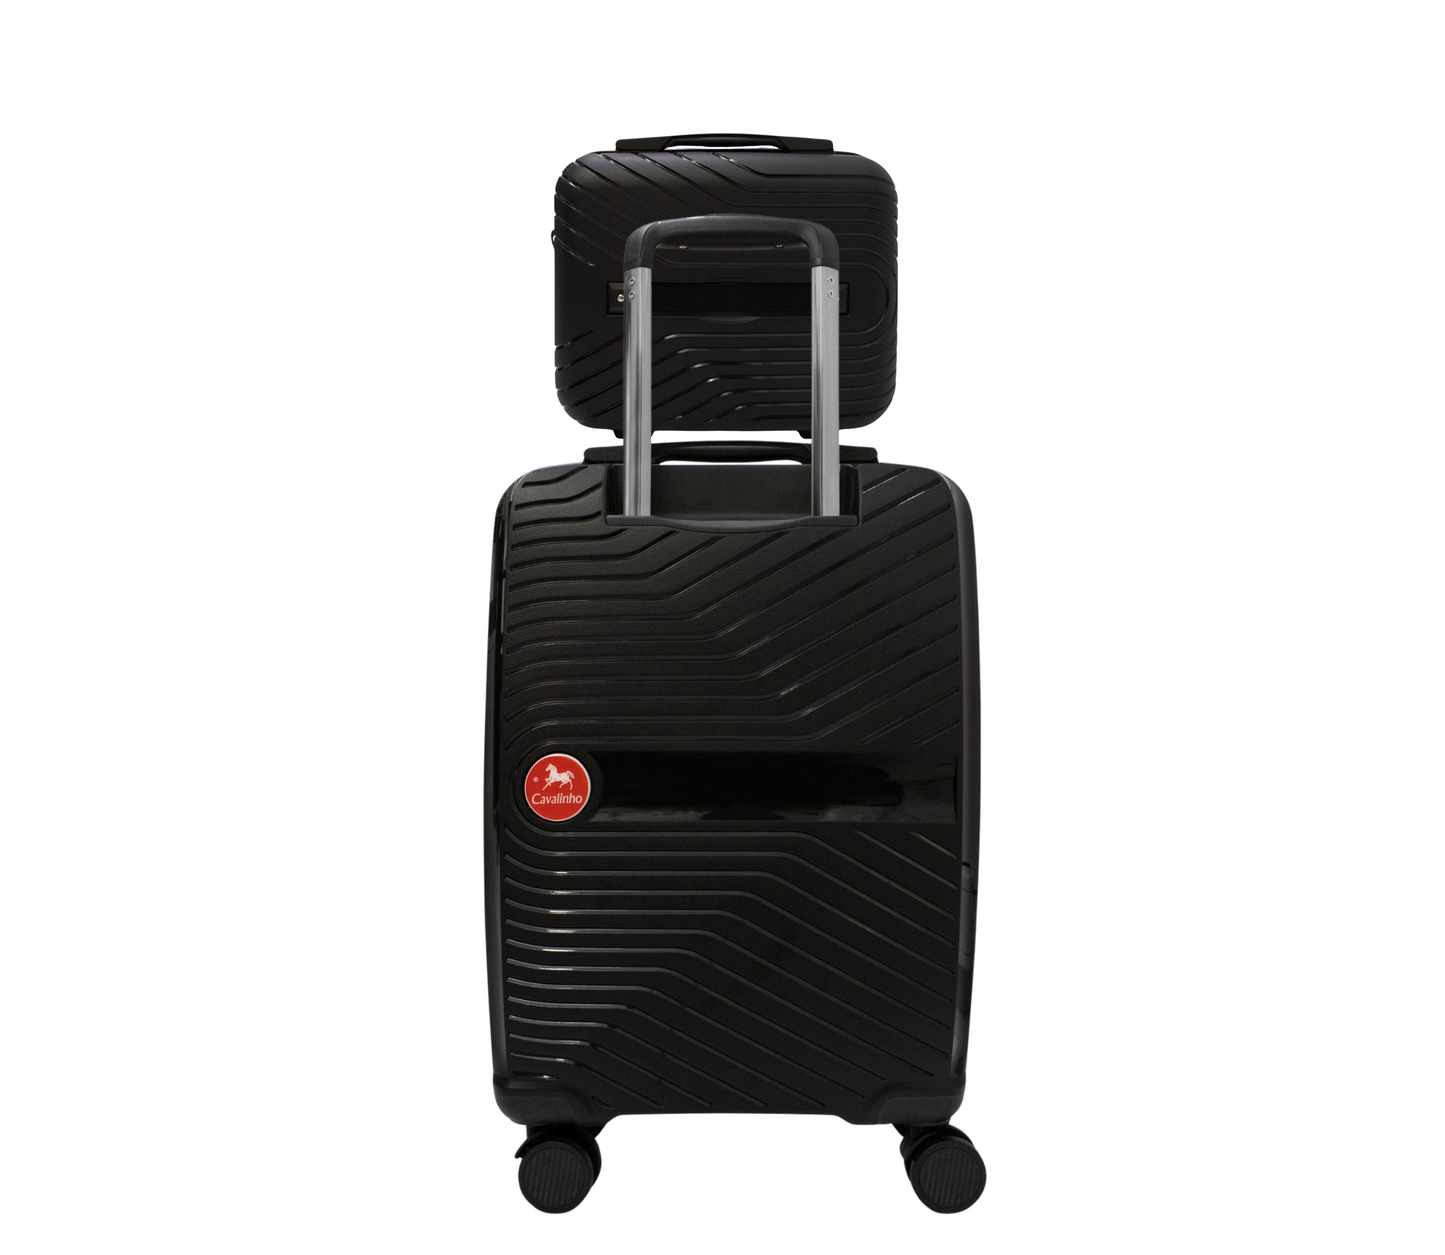 Cavalinho Canada & USA Colorful 2 Piece Luggage Set (15" & 19") - Black Black - 68020004.0101.S1519._2